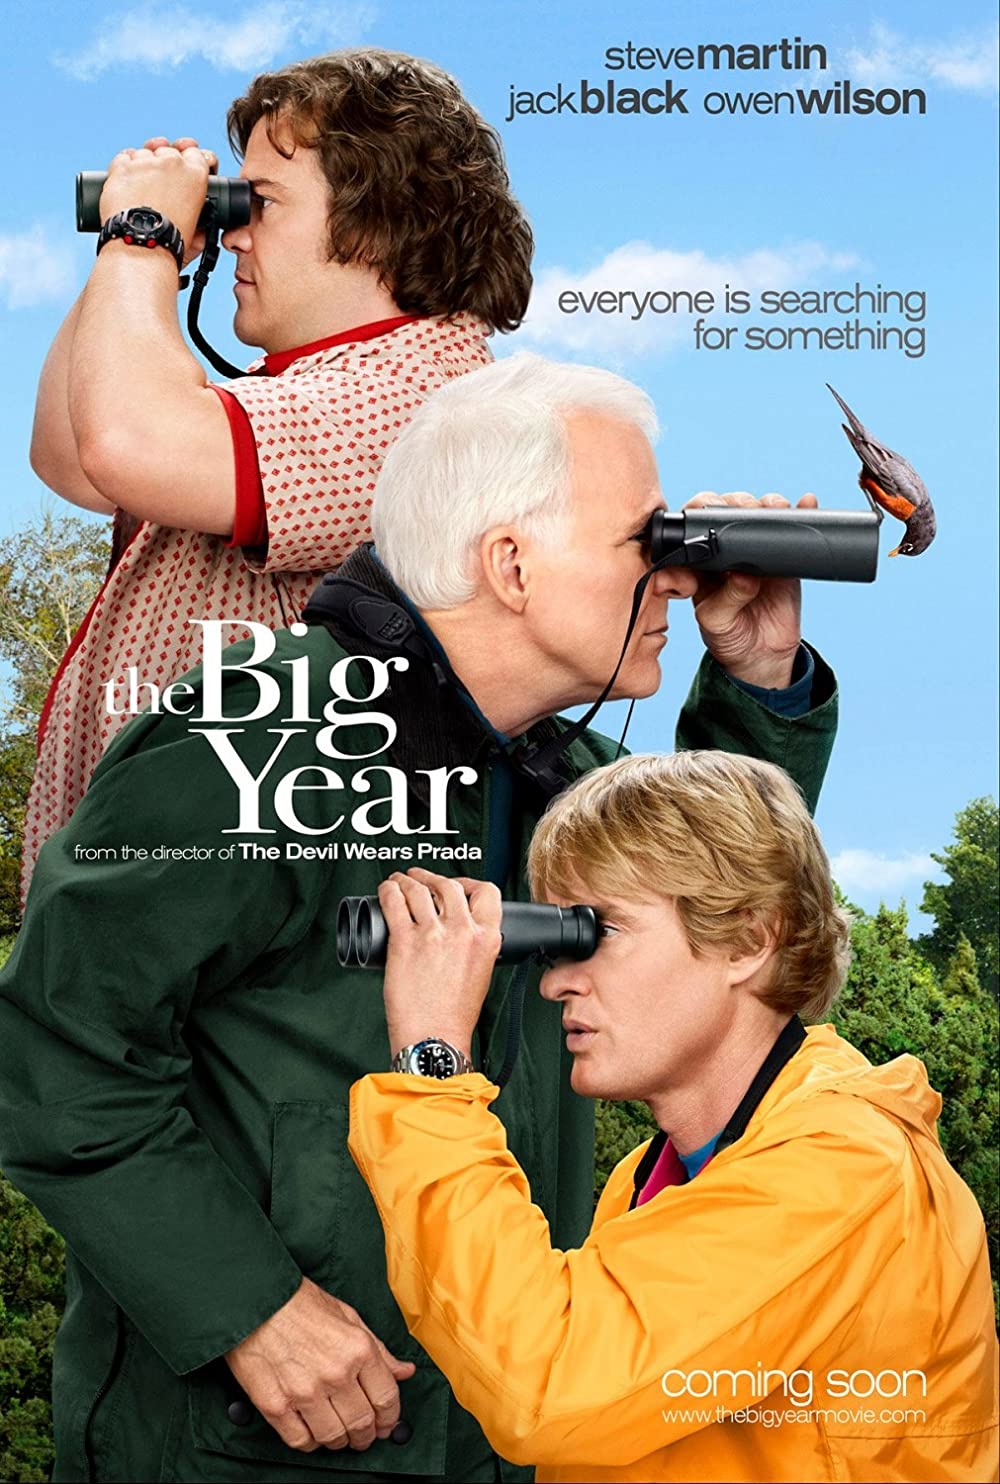 Filmbeschreibung zu The Big Year